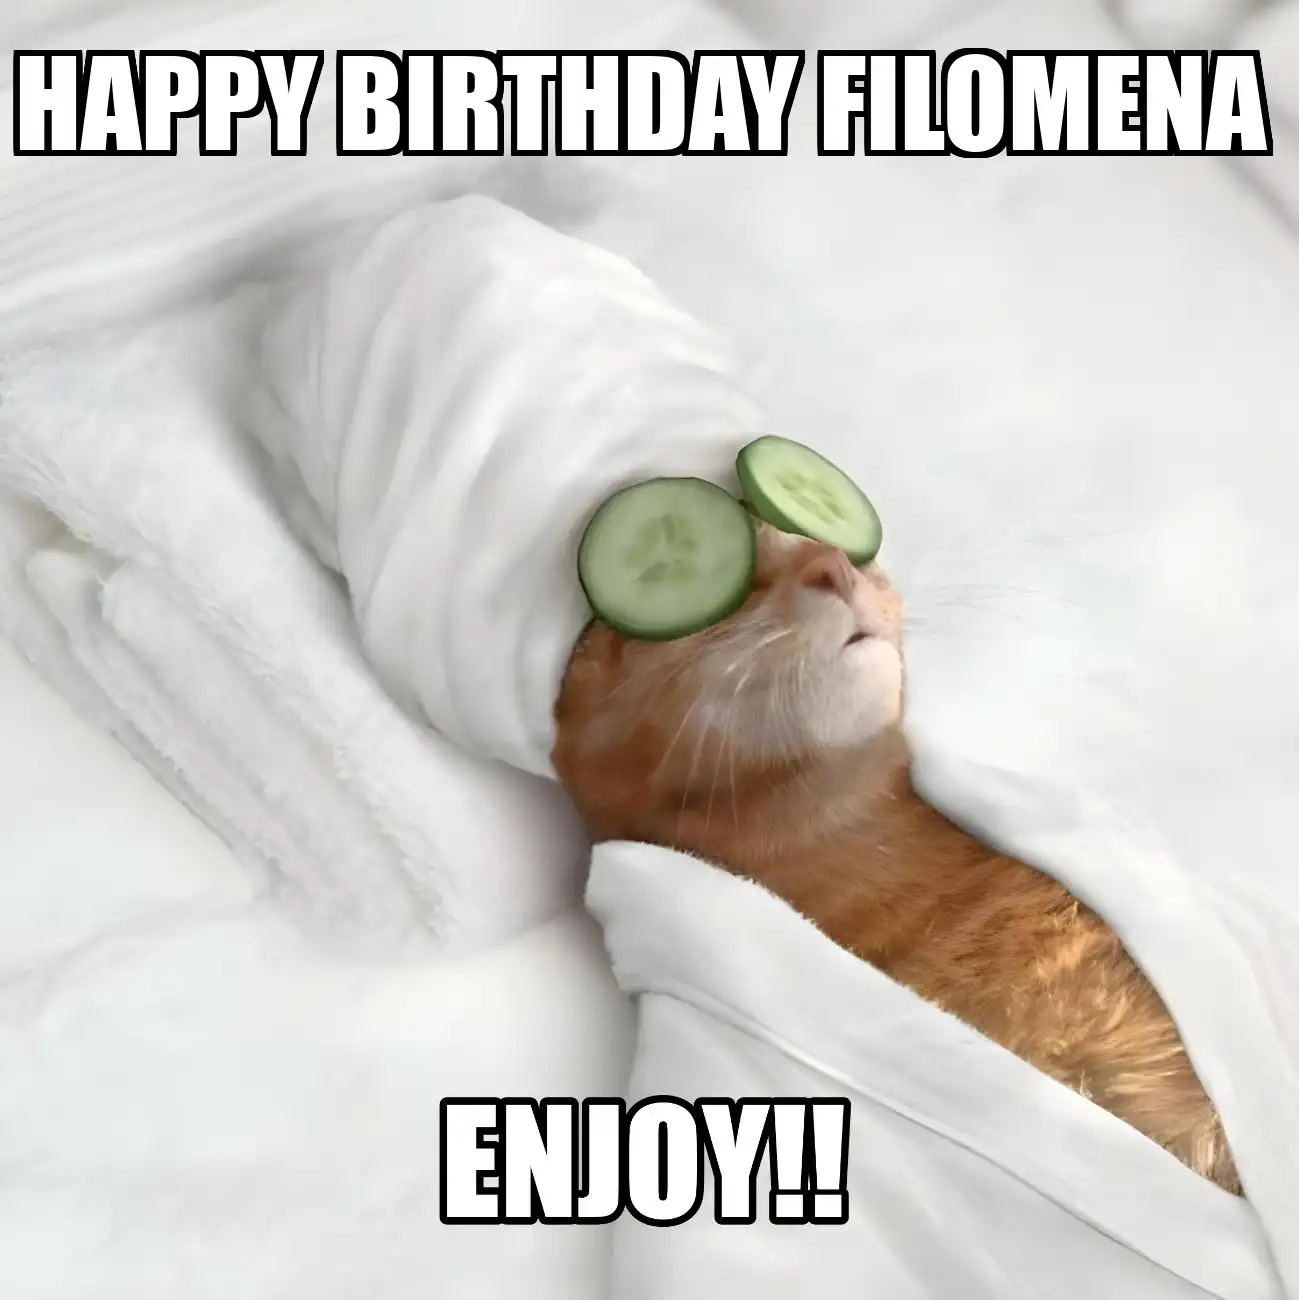 Happy Birthday Filomena Enjoy Cat Meme